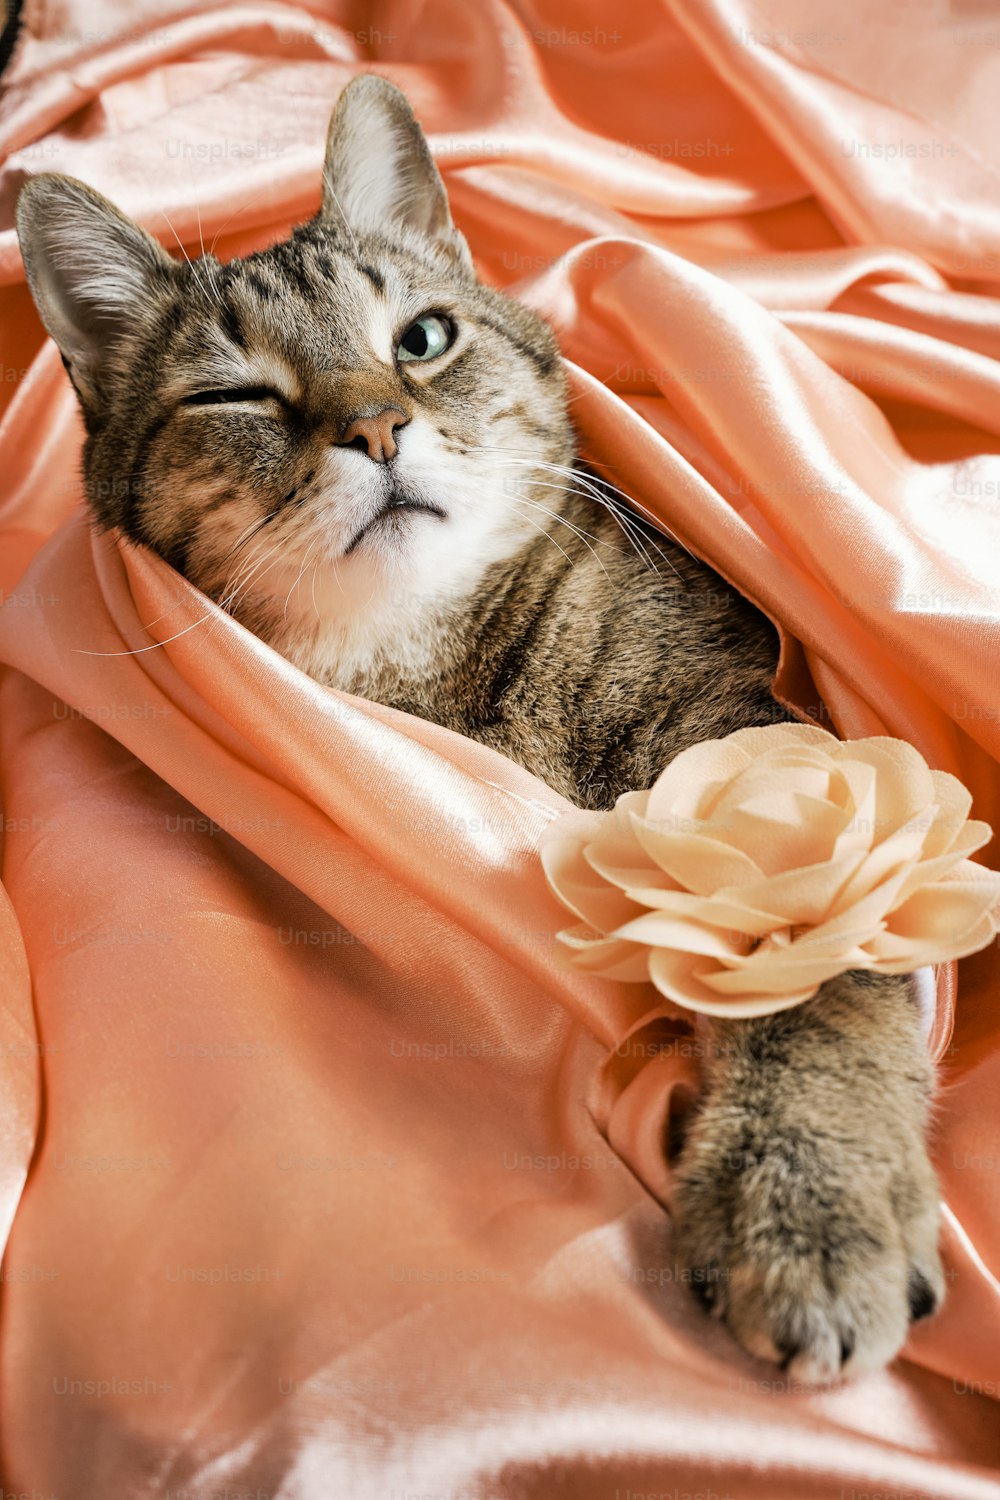 담요 위에 누워 있는 고양이